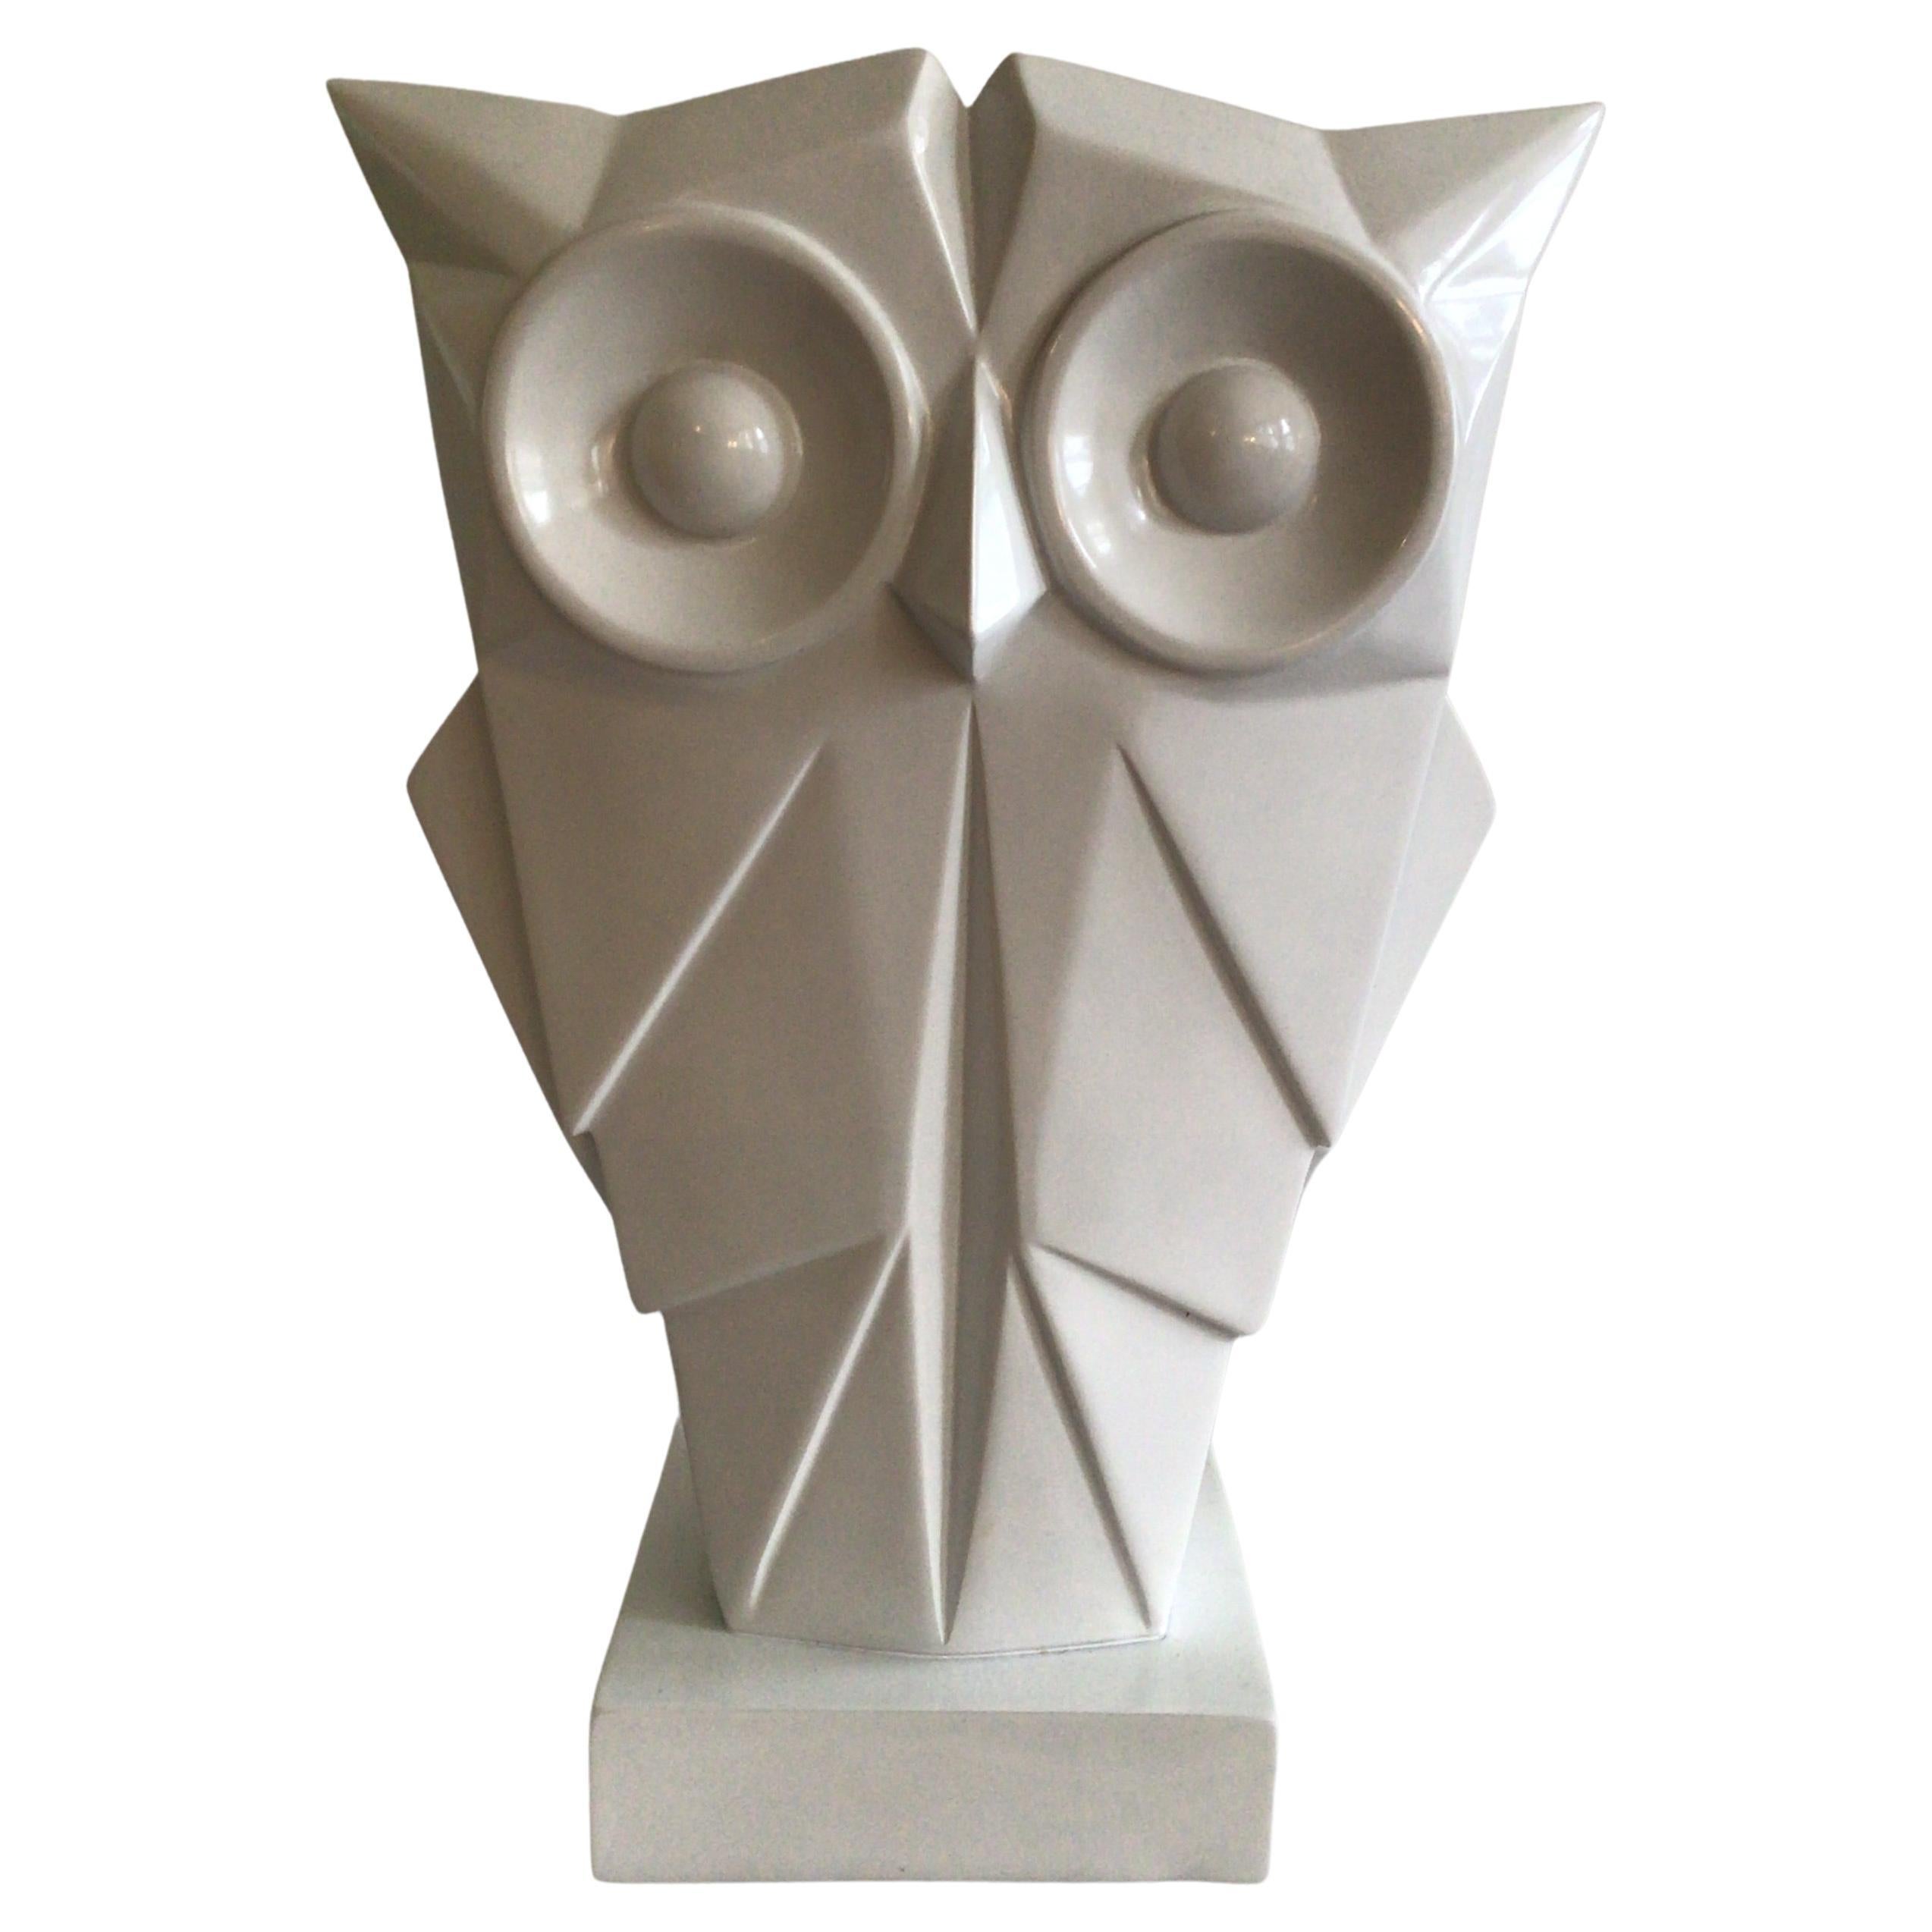 1970s Composition Sculptural Owl Art Deco Style